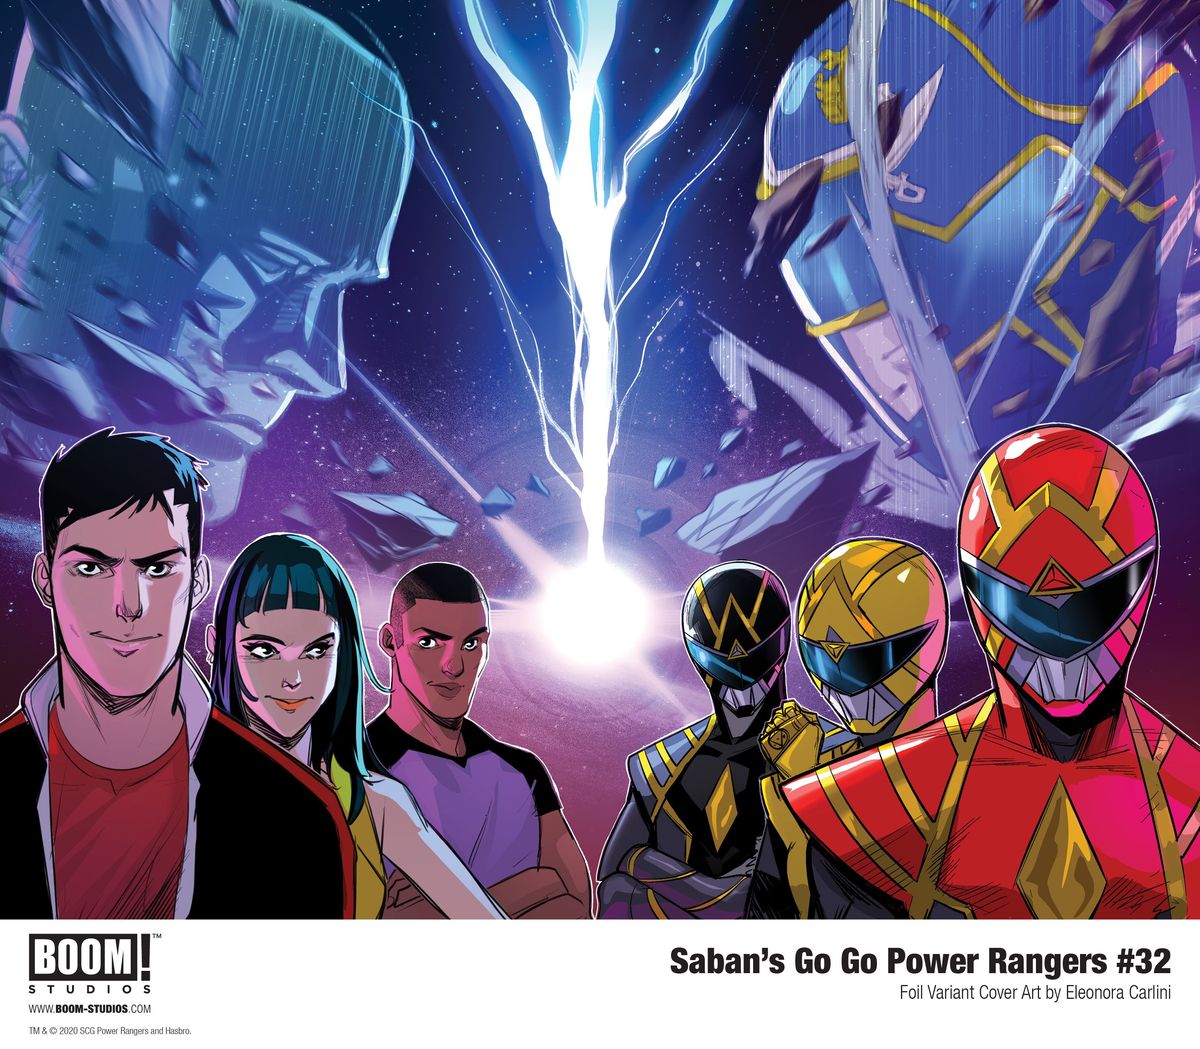 EXCLUSIVO: BOOM! Studios 'Go Go Power Rangers terminam com a edição nº 32